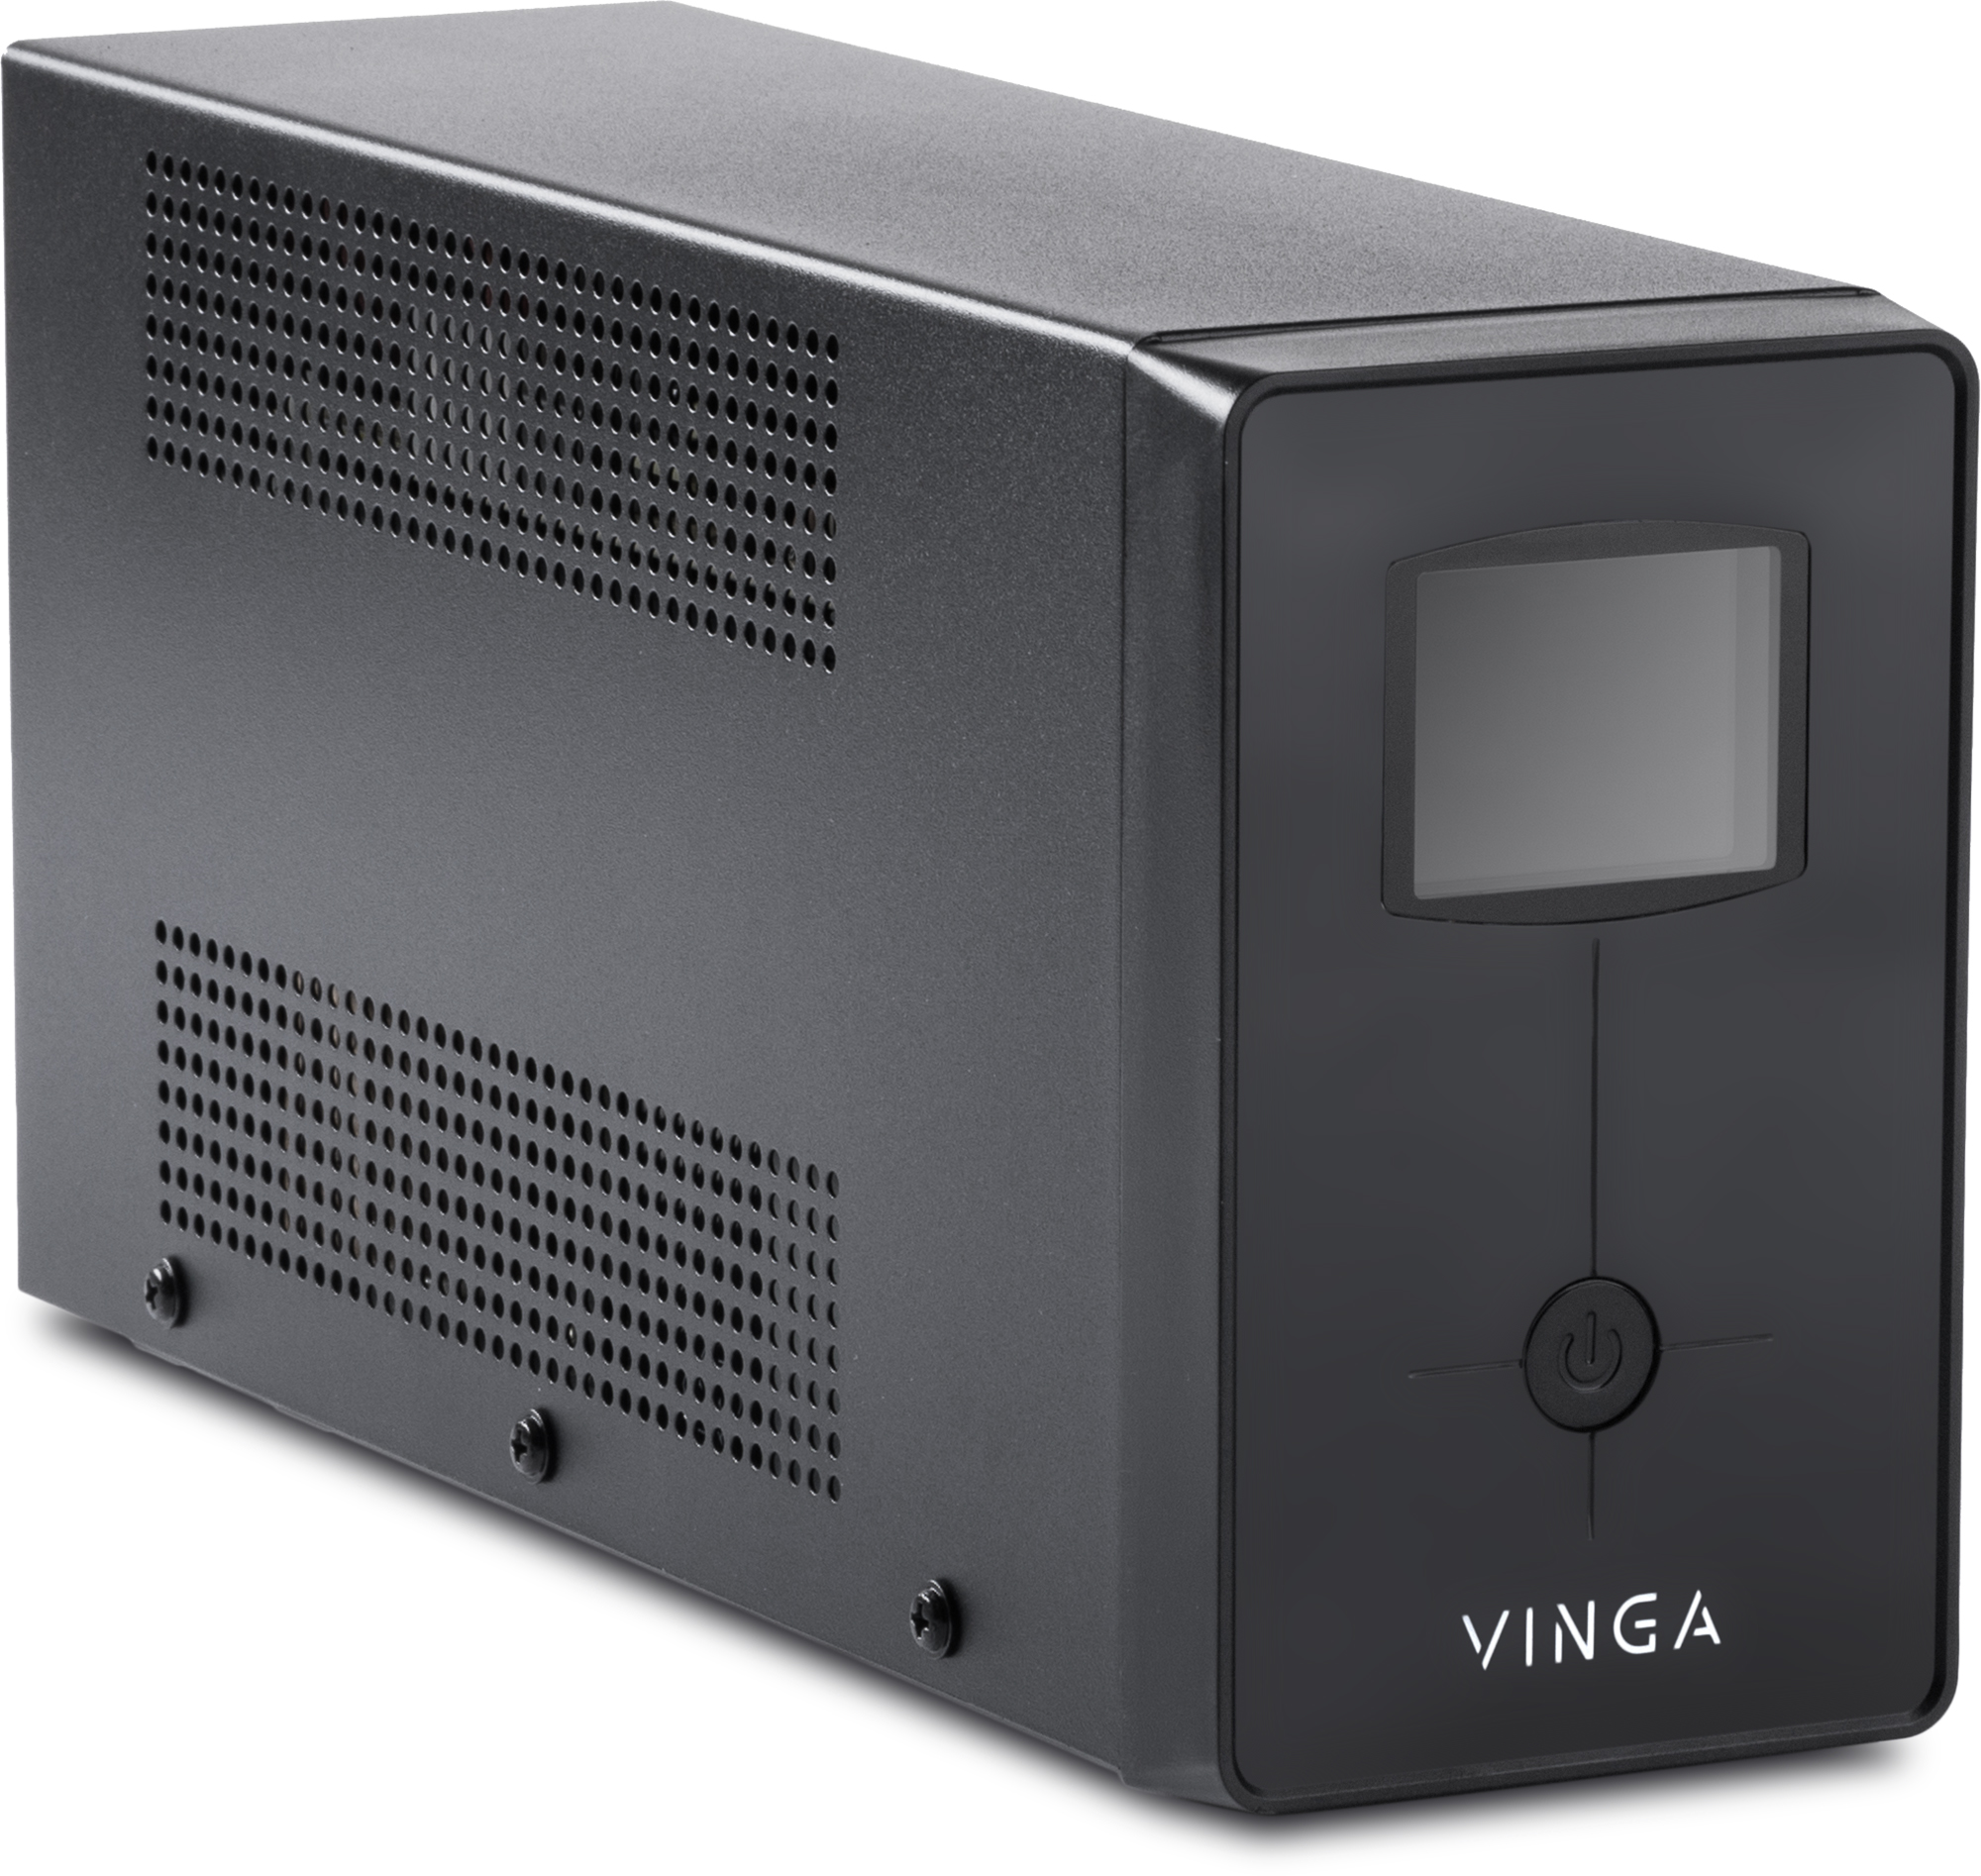 Джерело безперебійного живлення Vinga LCD 800VA (VPC-800M) характеристики - фотографія 7